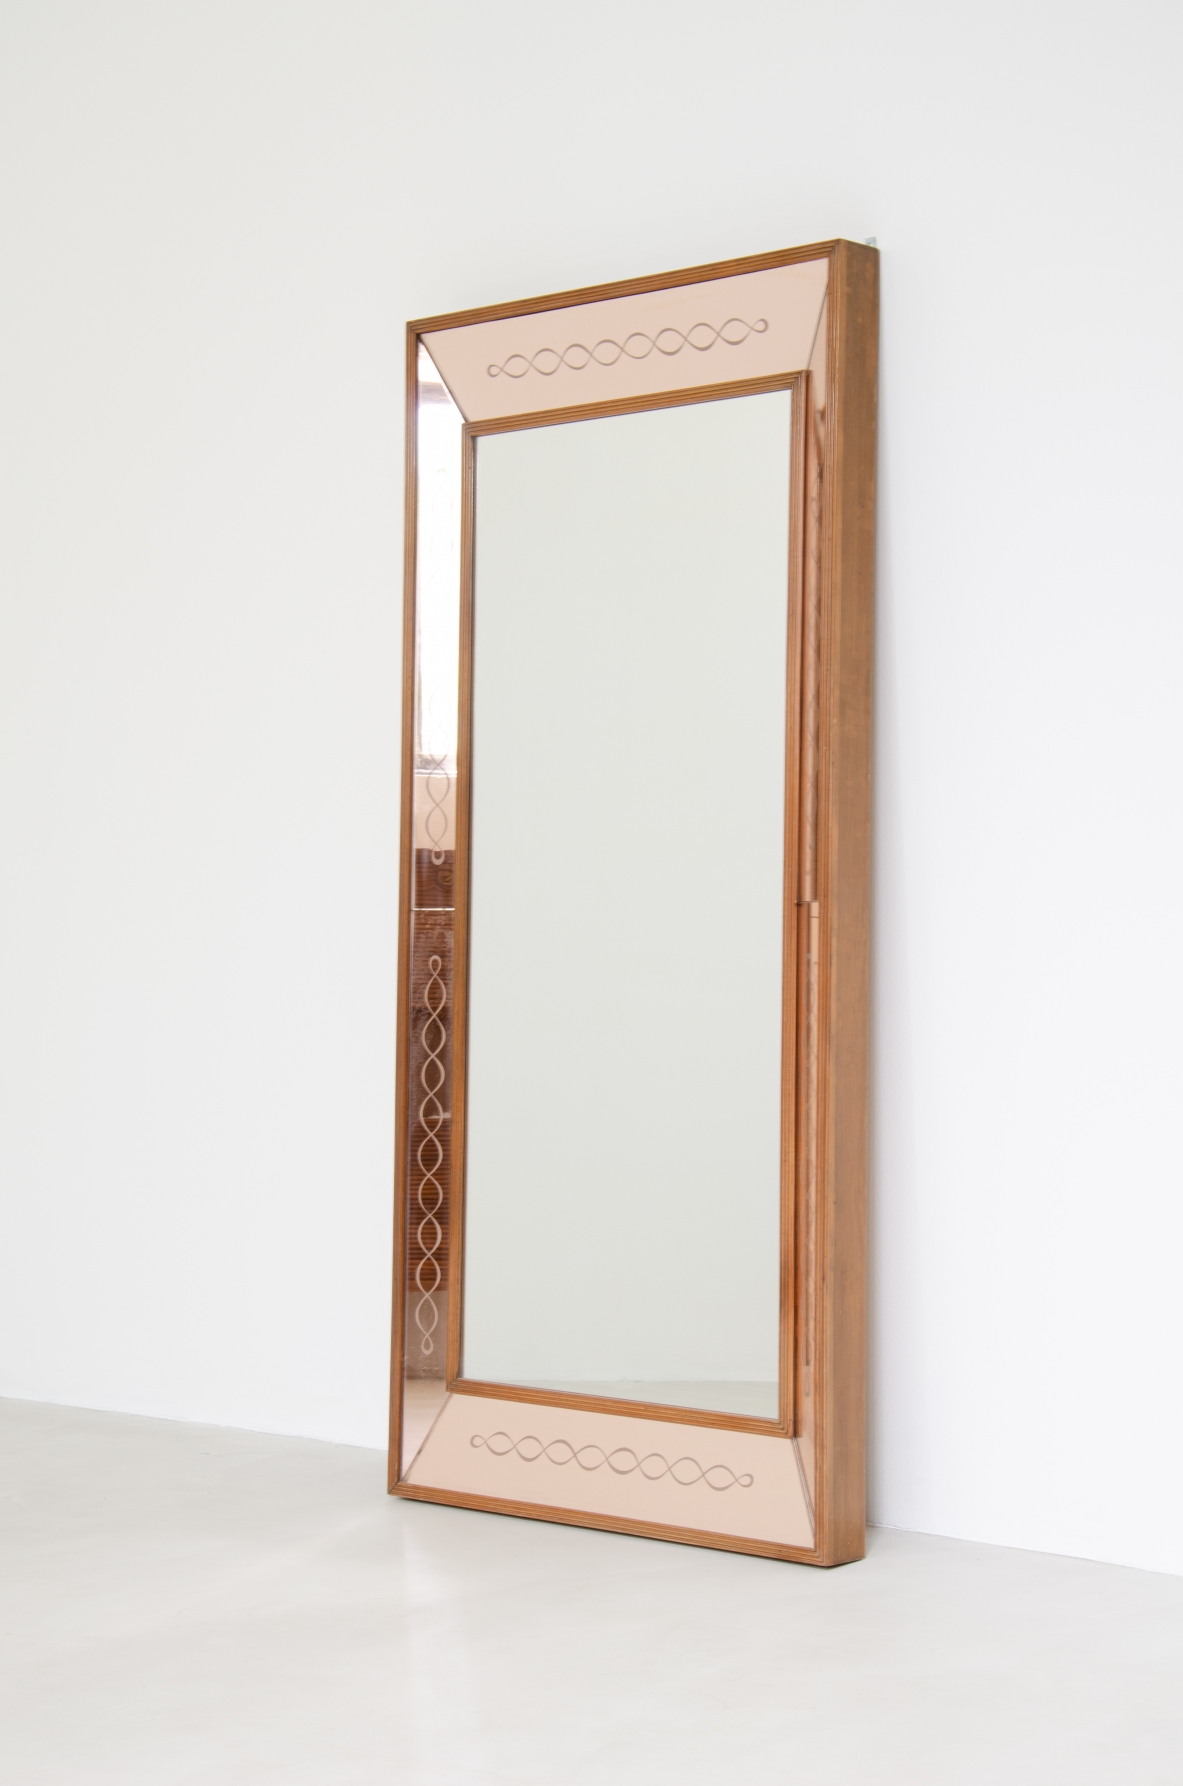 Grande specchiera con specchi laterali inclinati color cipria incisi con motivo a nastro, cornice in legno. Manifattura Italiana anni 40.